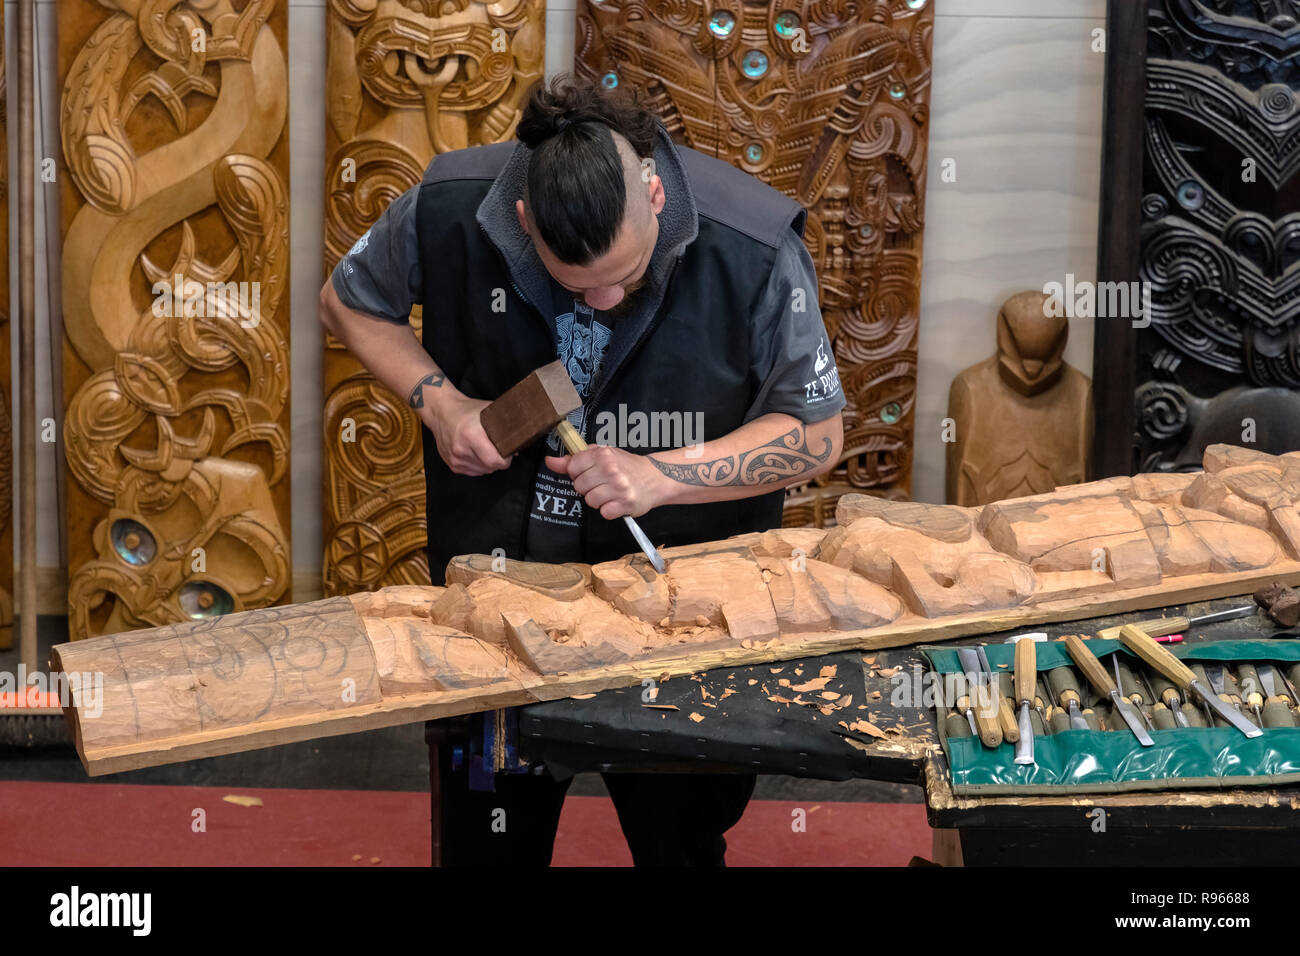 Maori carving, Whakarewarewa, Rotorua, North Island, New Zealand Stock Photo